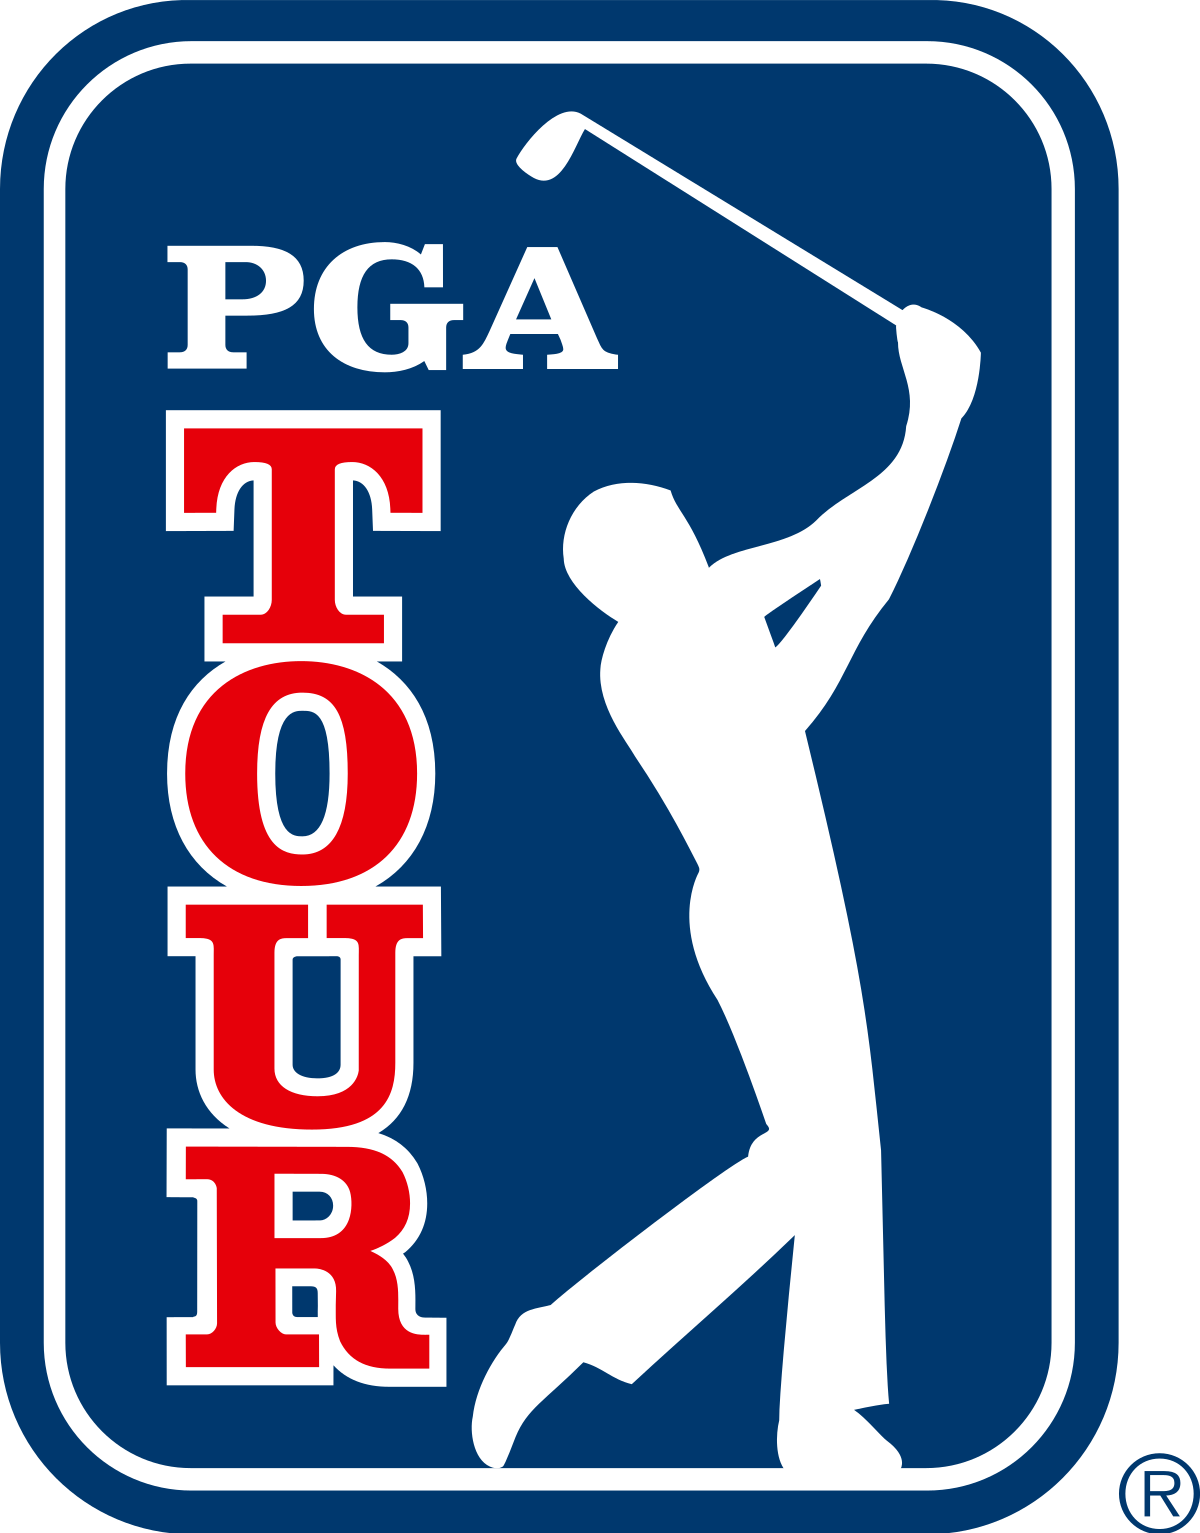 PG Tour LIV golf